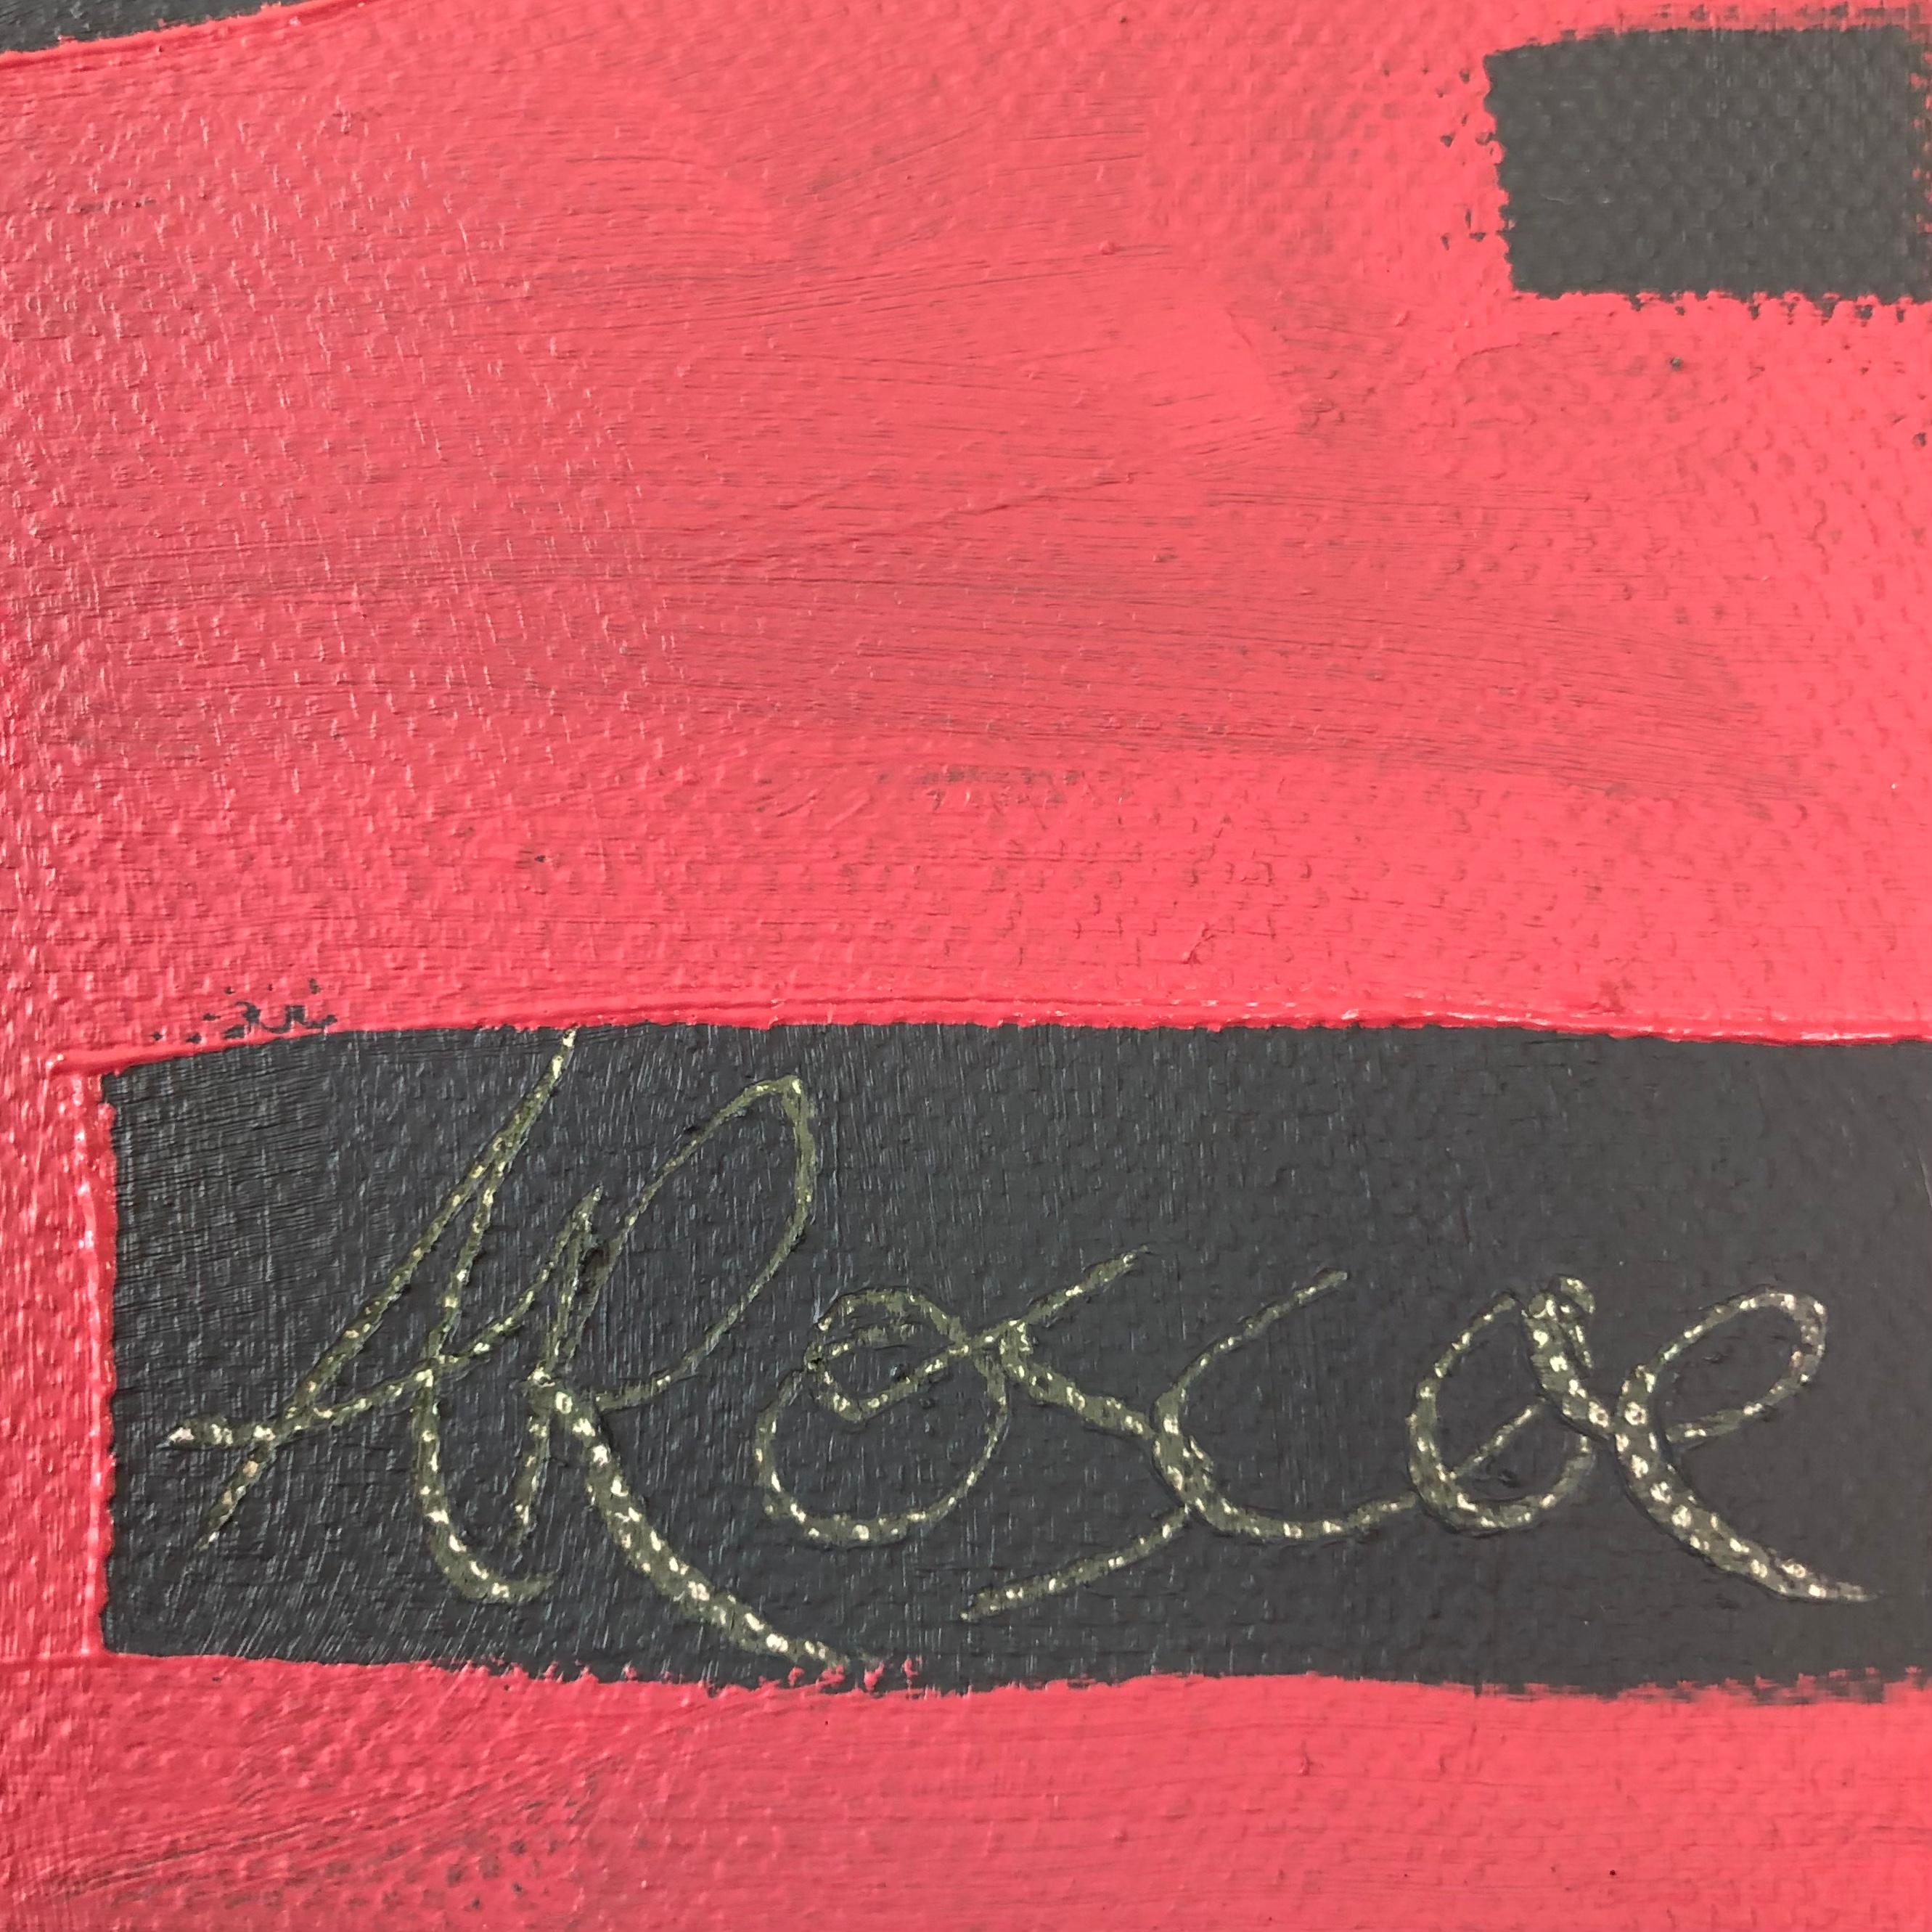 Dreamy Fields no. 1 est une peinture originale de l'artiste Alexa Roscoe. Cette peinture a une qualité apaisante et onirique avec ses couleurs douces et ses lignes fluides.

INFORMATIONS COMPLÉMENTAIRES :
Champs de rêve [2023]
Peinture